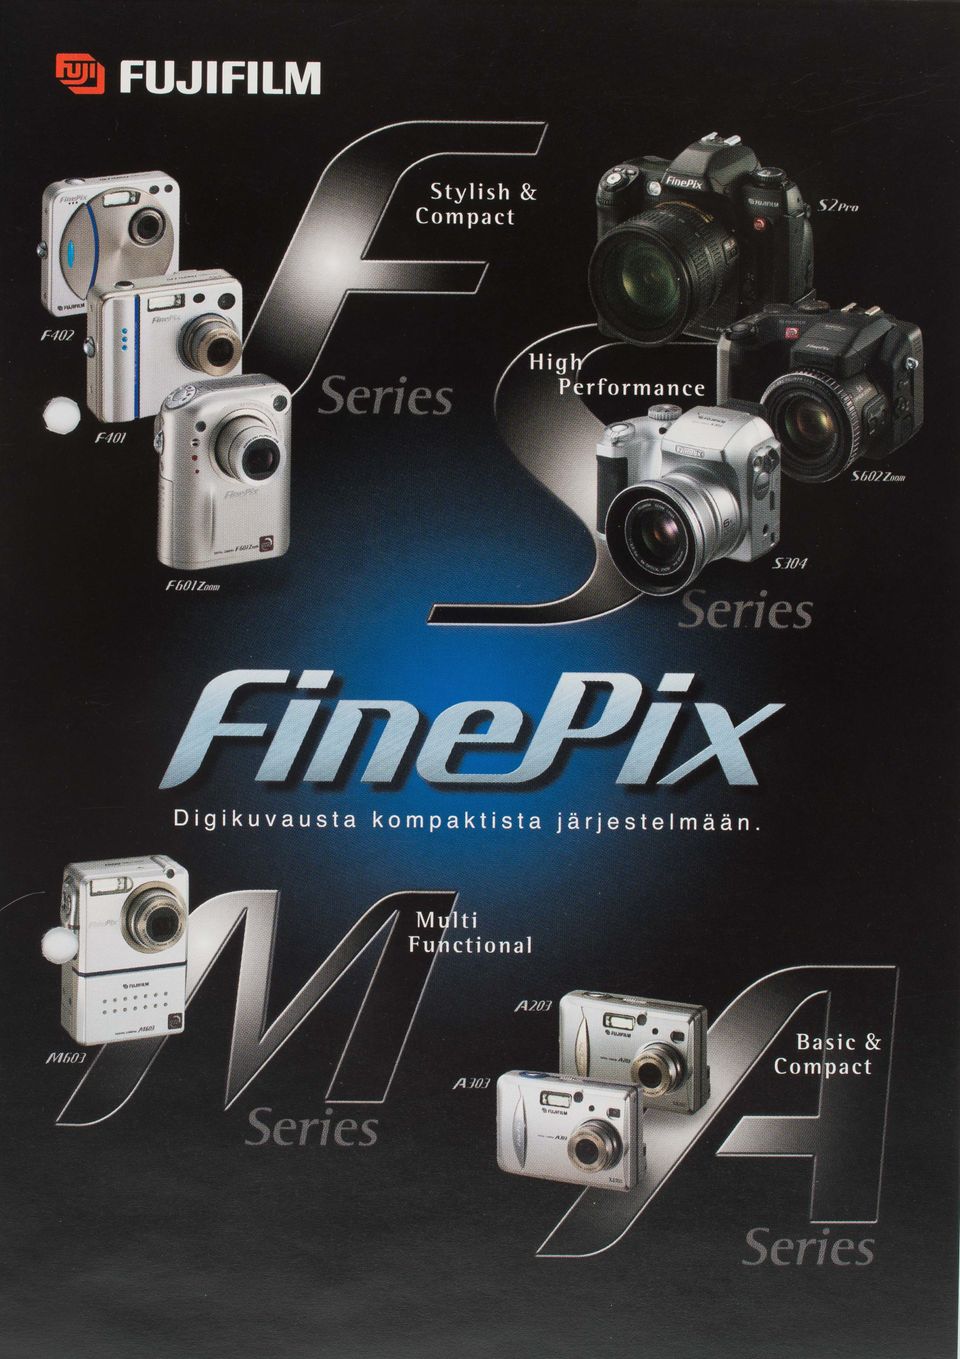 Fuji film FinePix